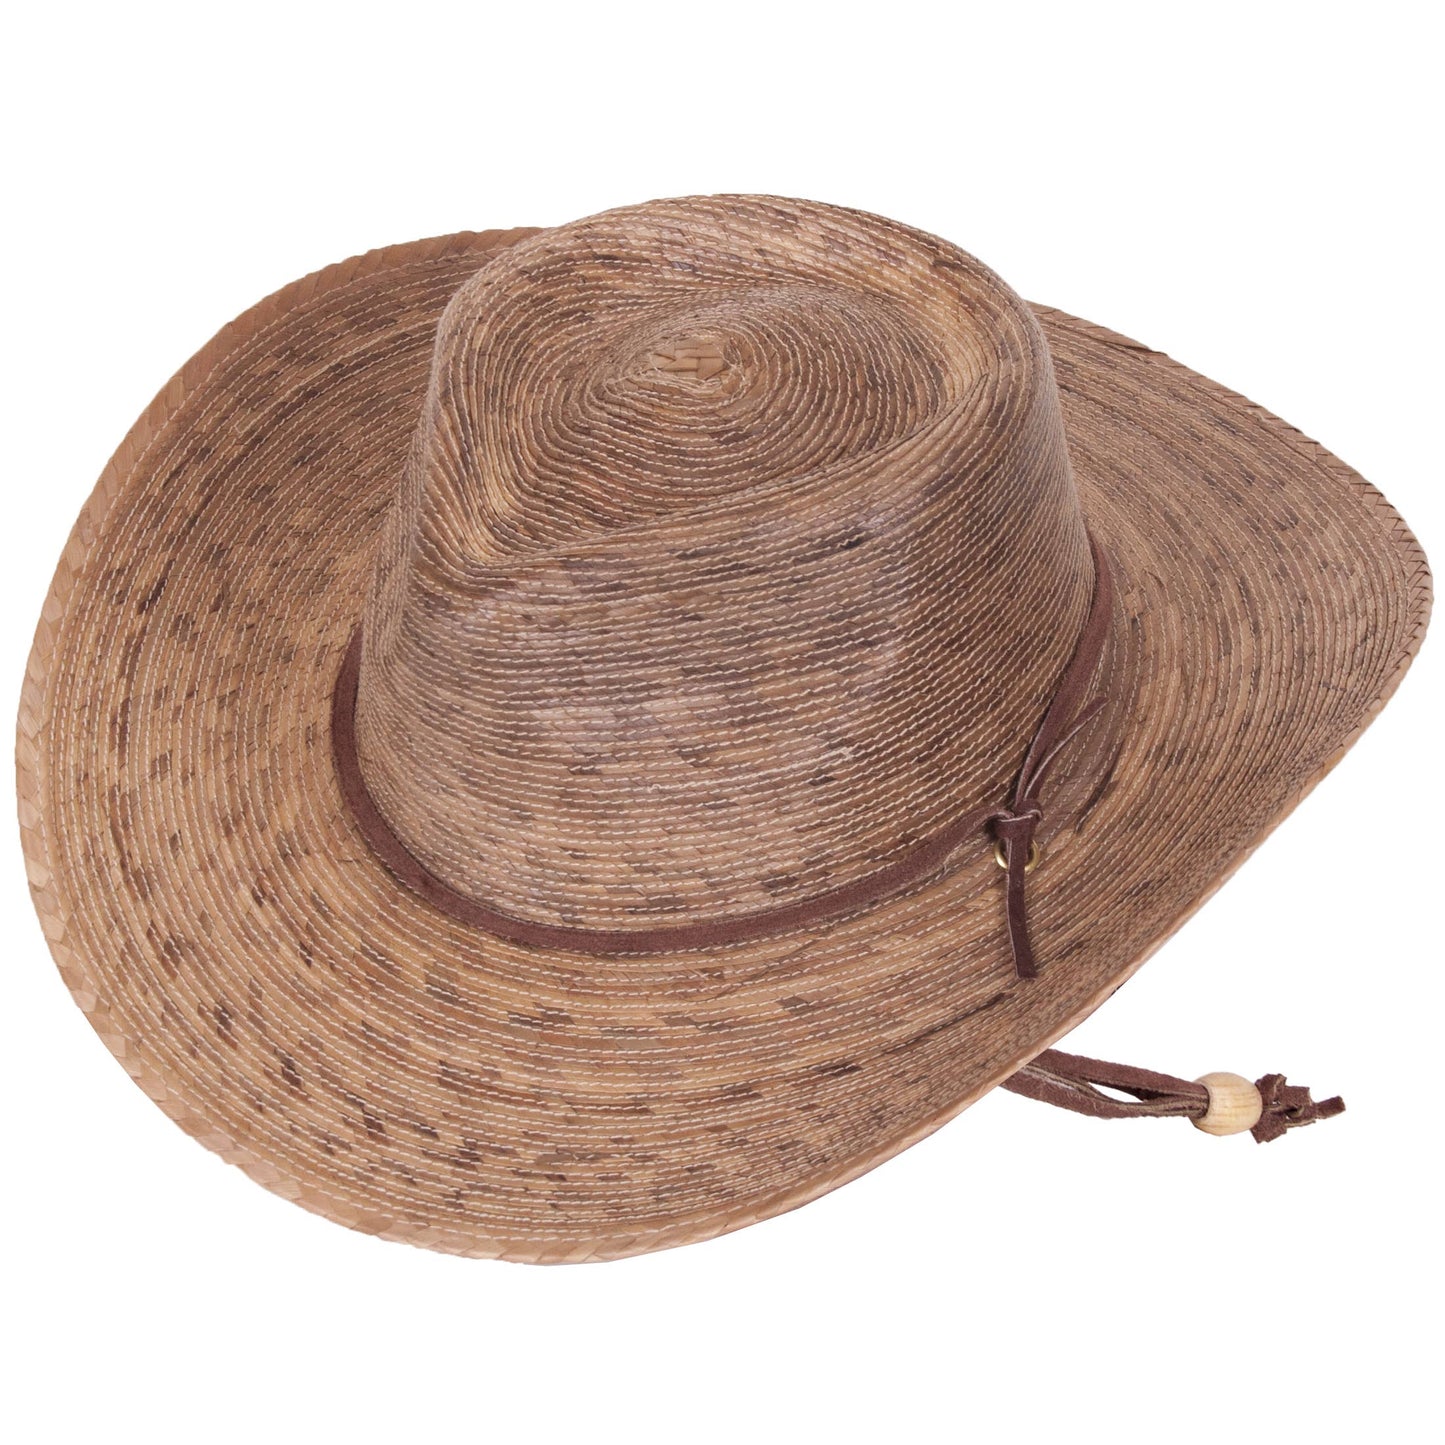 Tula - Sierra Hat